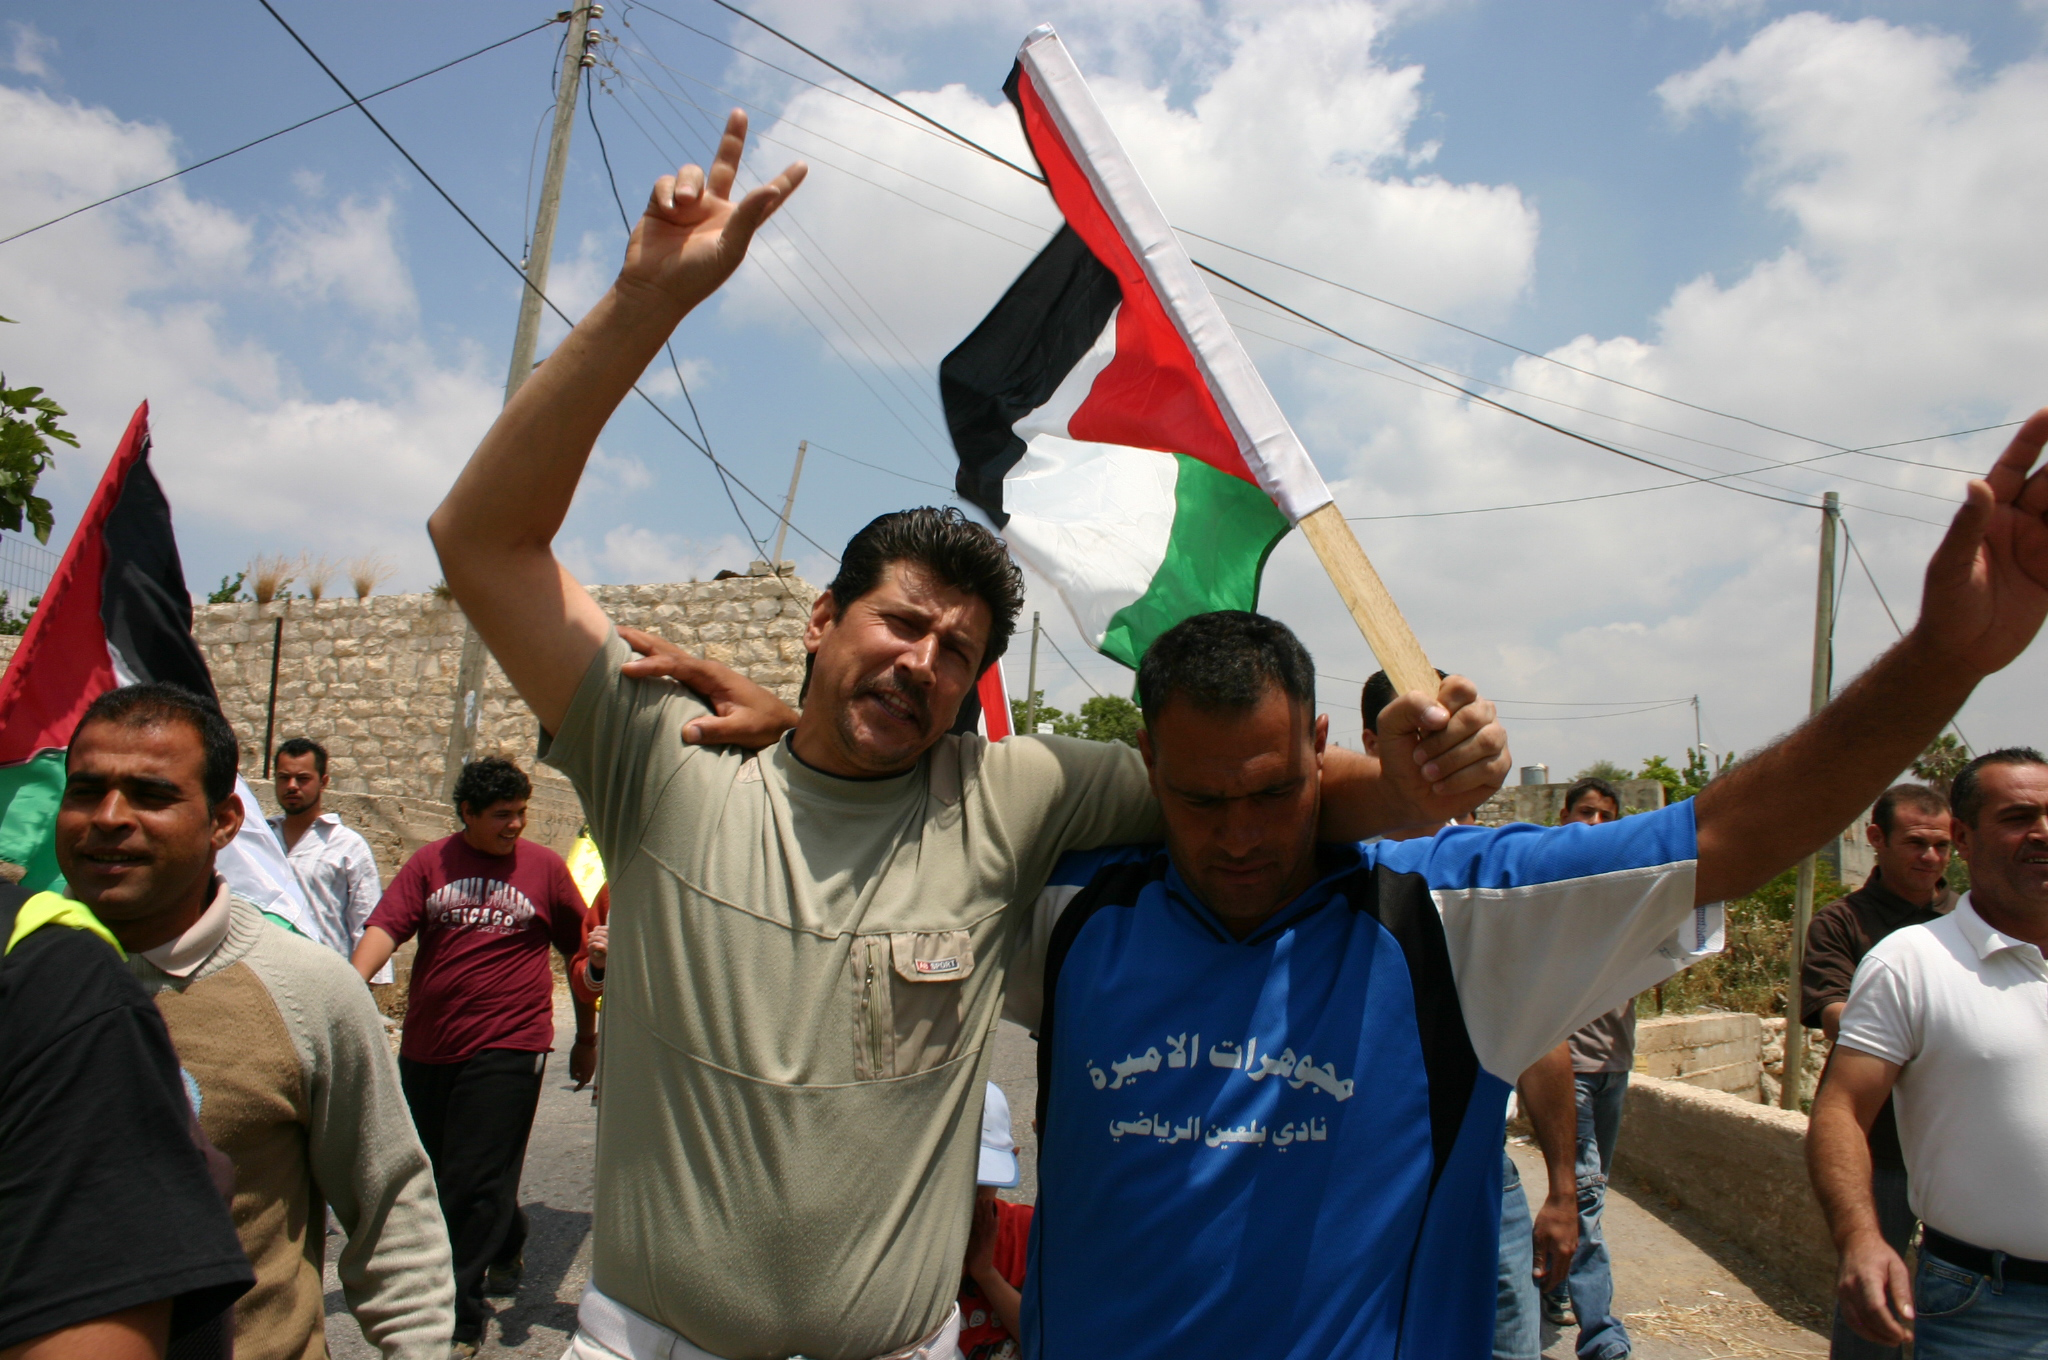 התהליך המדיני הוא עניין שבין הפלסטינים לאחיהם הערבים